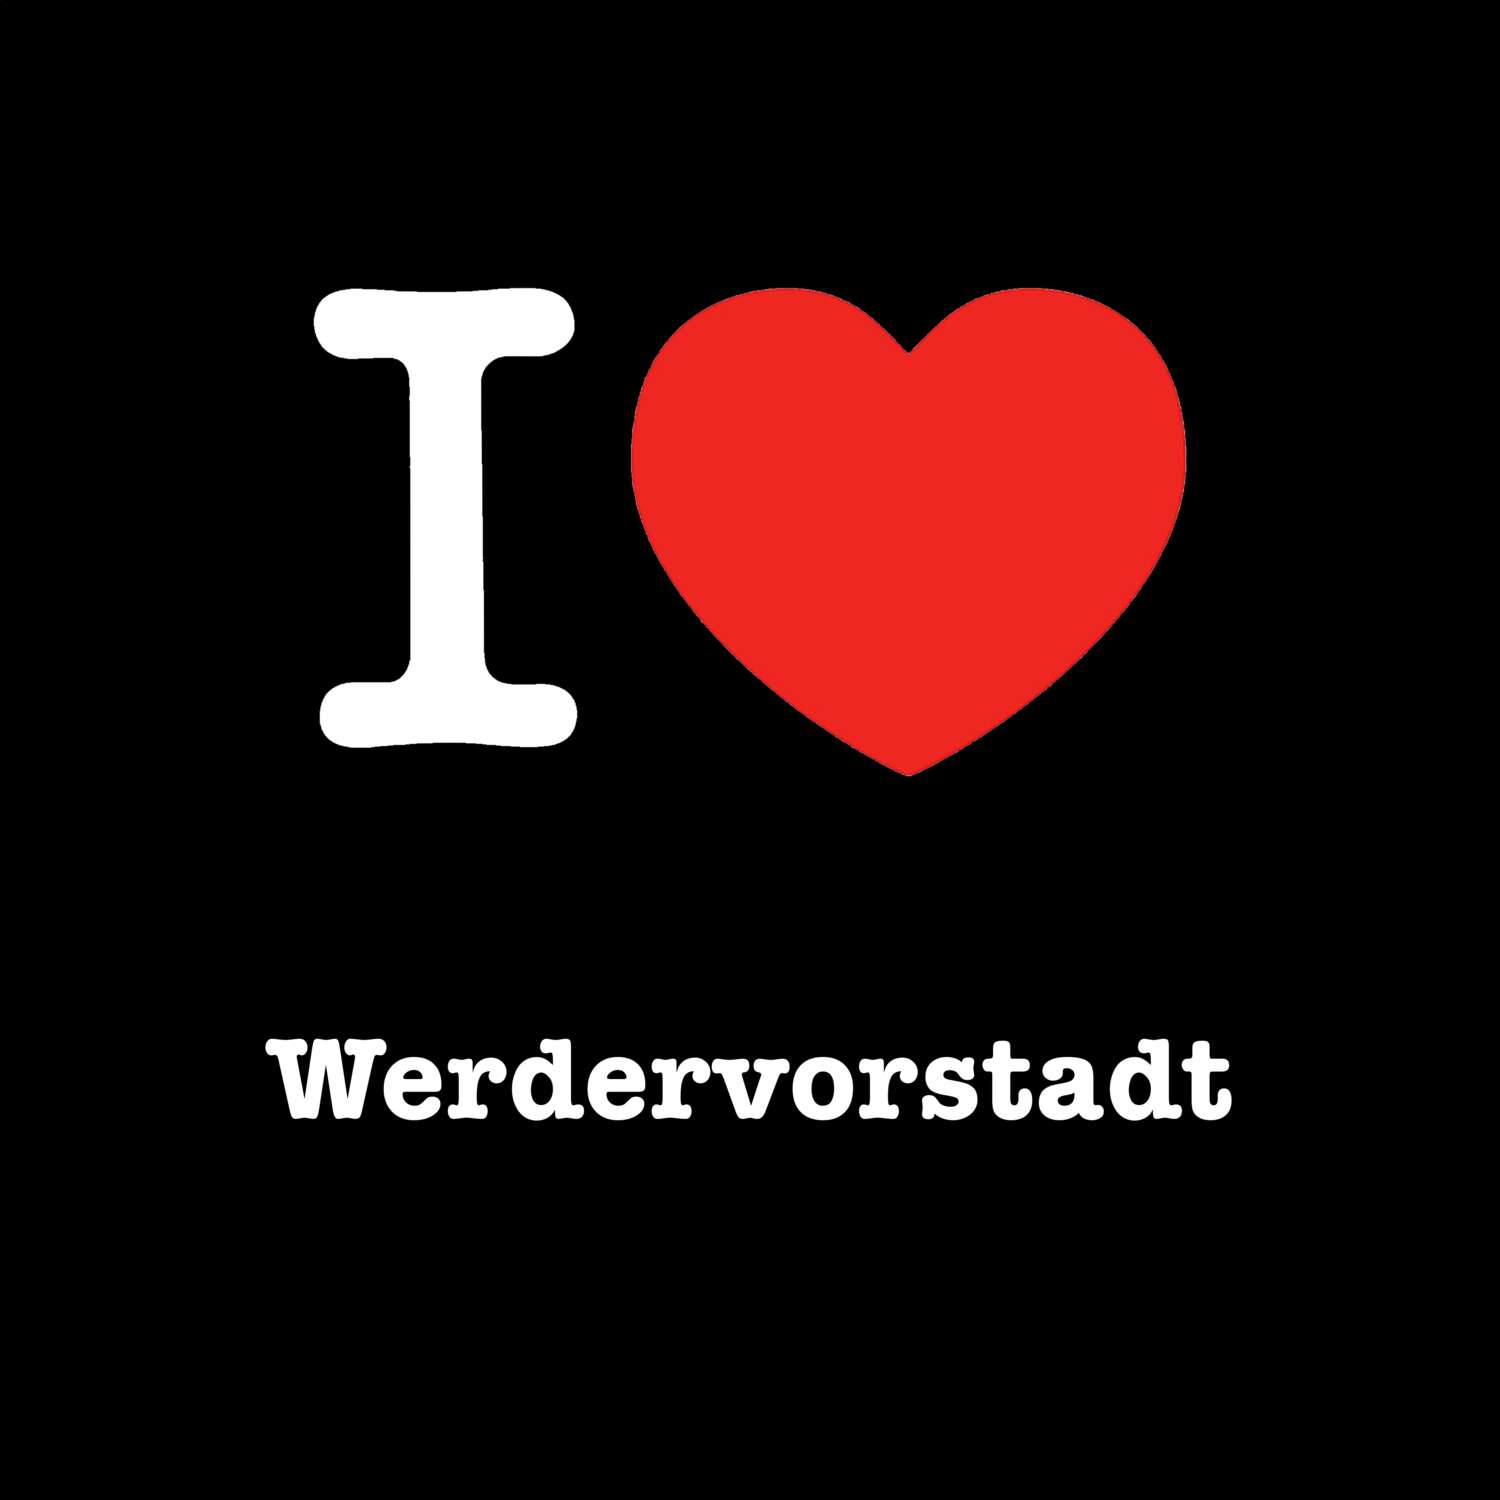 Werdervorstadt T-Shirt »I love«